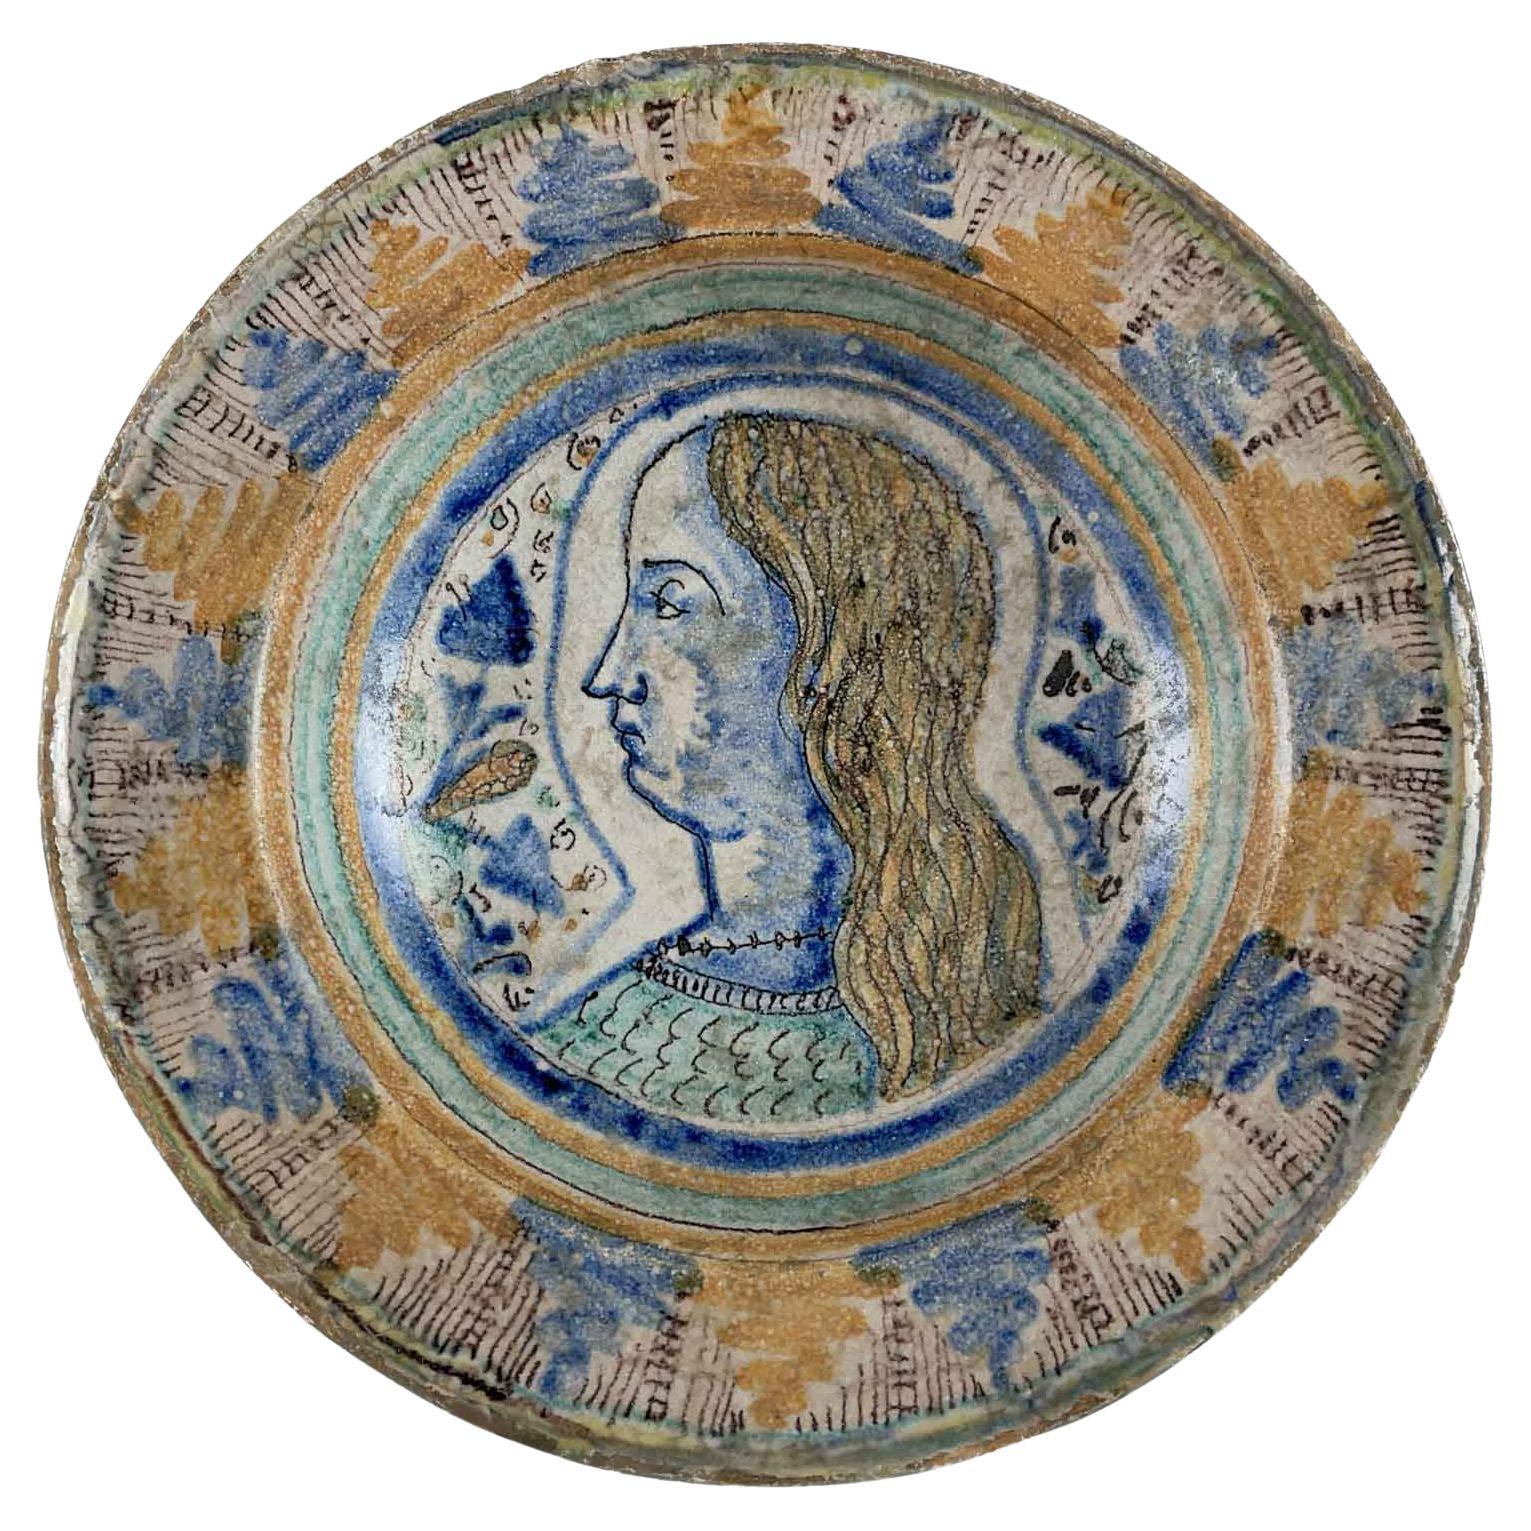 Mitte des 16. Jahrhunderts Italienische Maiolica Schale handbemalt in blau und ockergelb Farbe mit einem Profil junger Mann Porträt in der Mitte. Das Maiolika-Farbdekor in Gelb und Blau ist in einem eleganten Wechsel von geometrischen Motiven auf